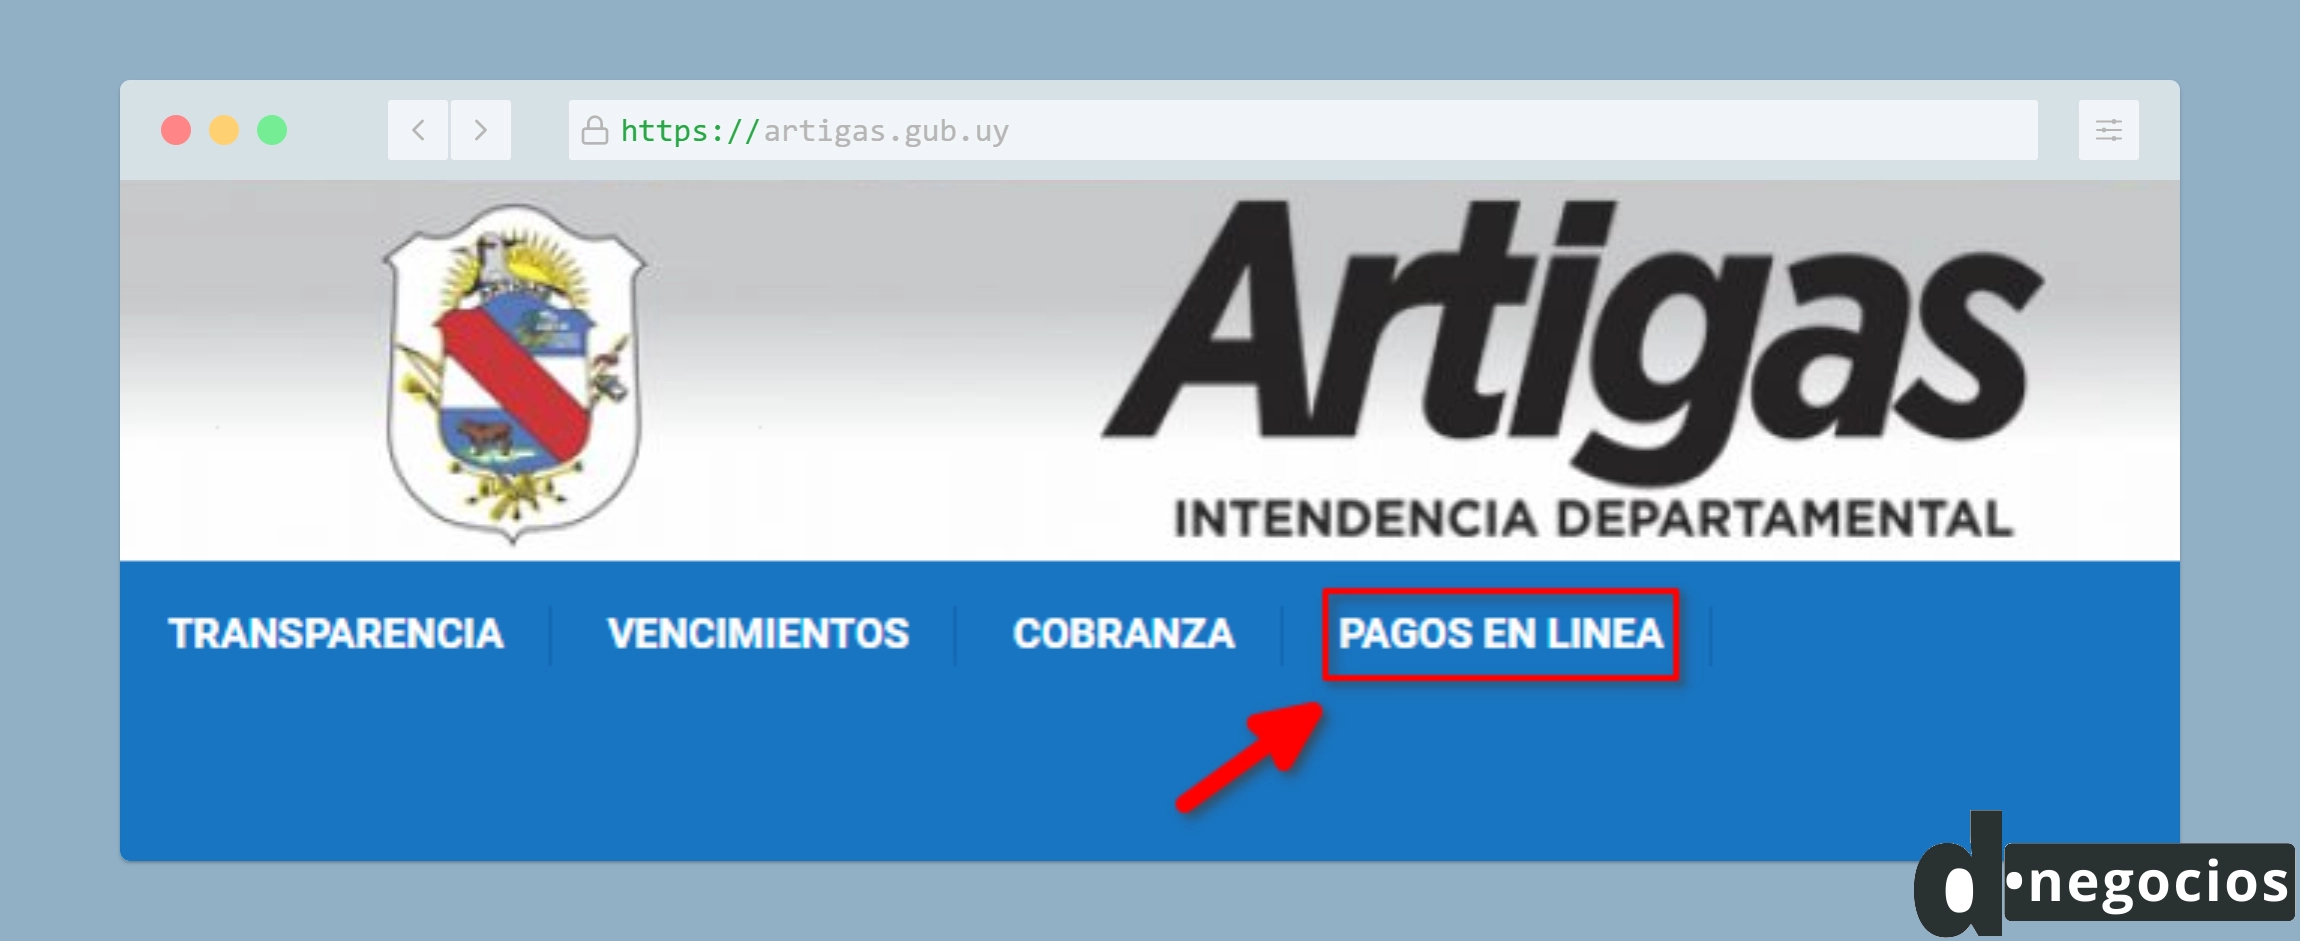 Sección "Pago en Línea" del sitio web de la Intendencia de Artigas.